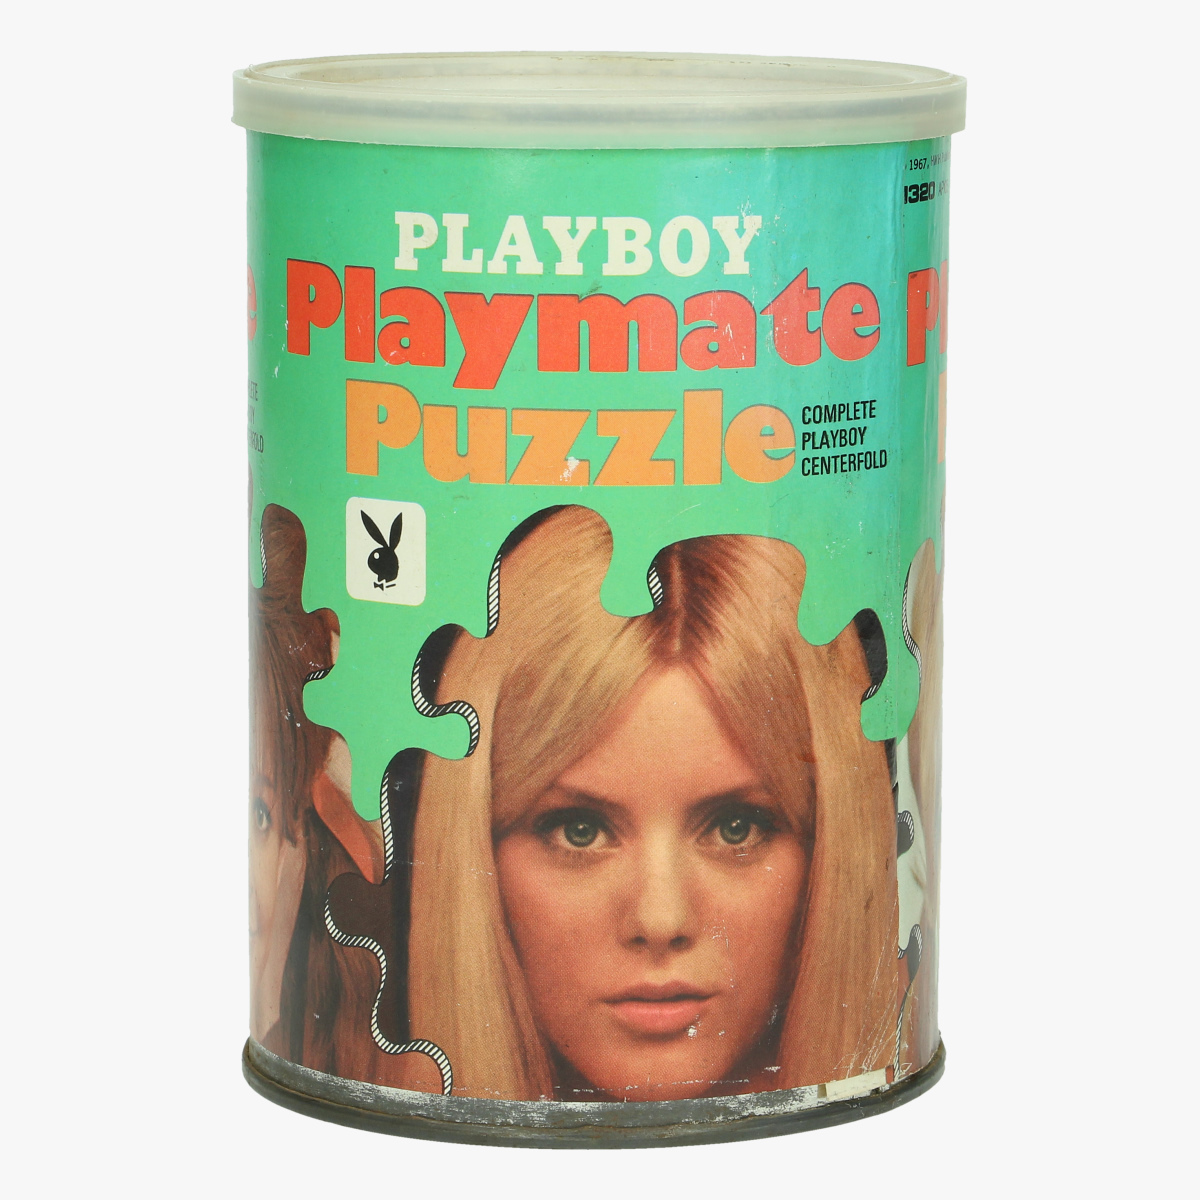 Afbeeldingen van vintage playboy puzzel 1967 mis october majken haugedal hmh publishing co .inc.